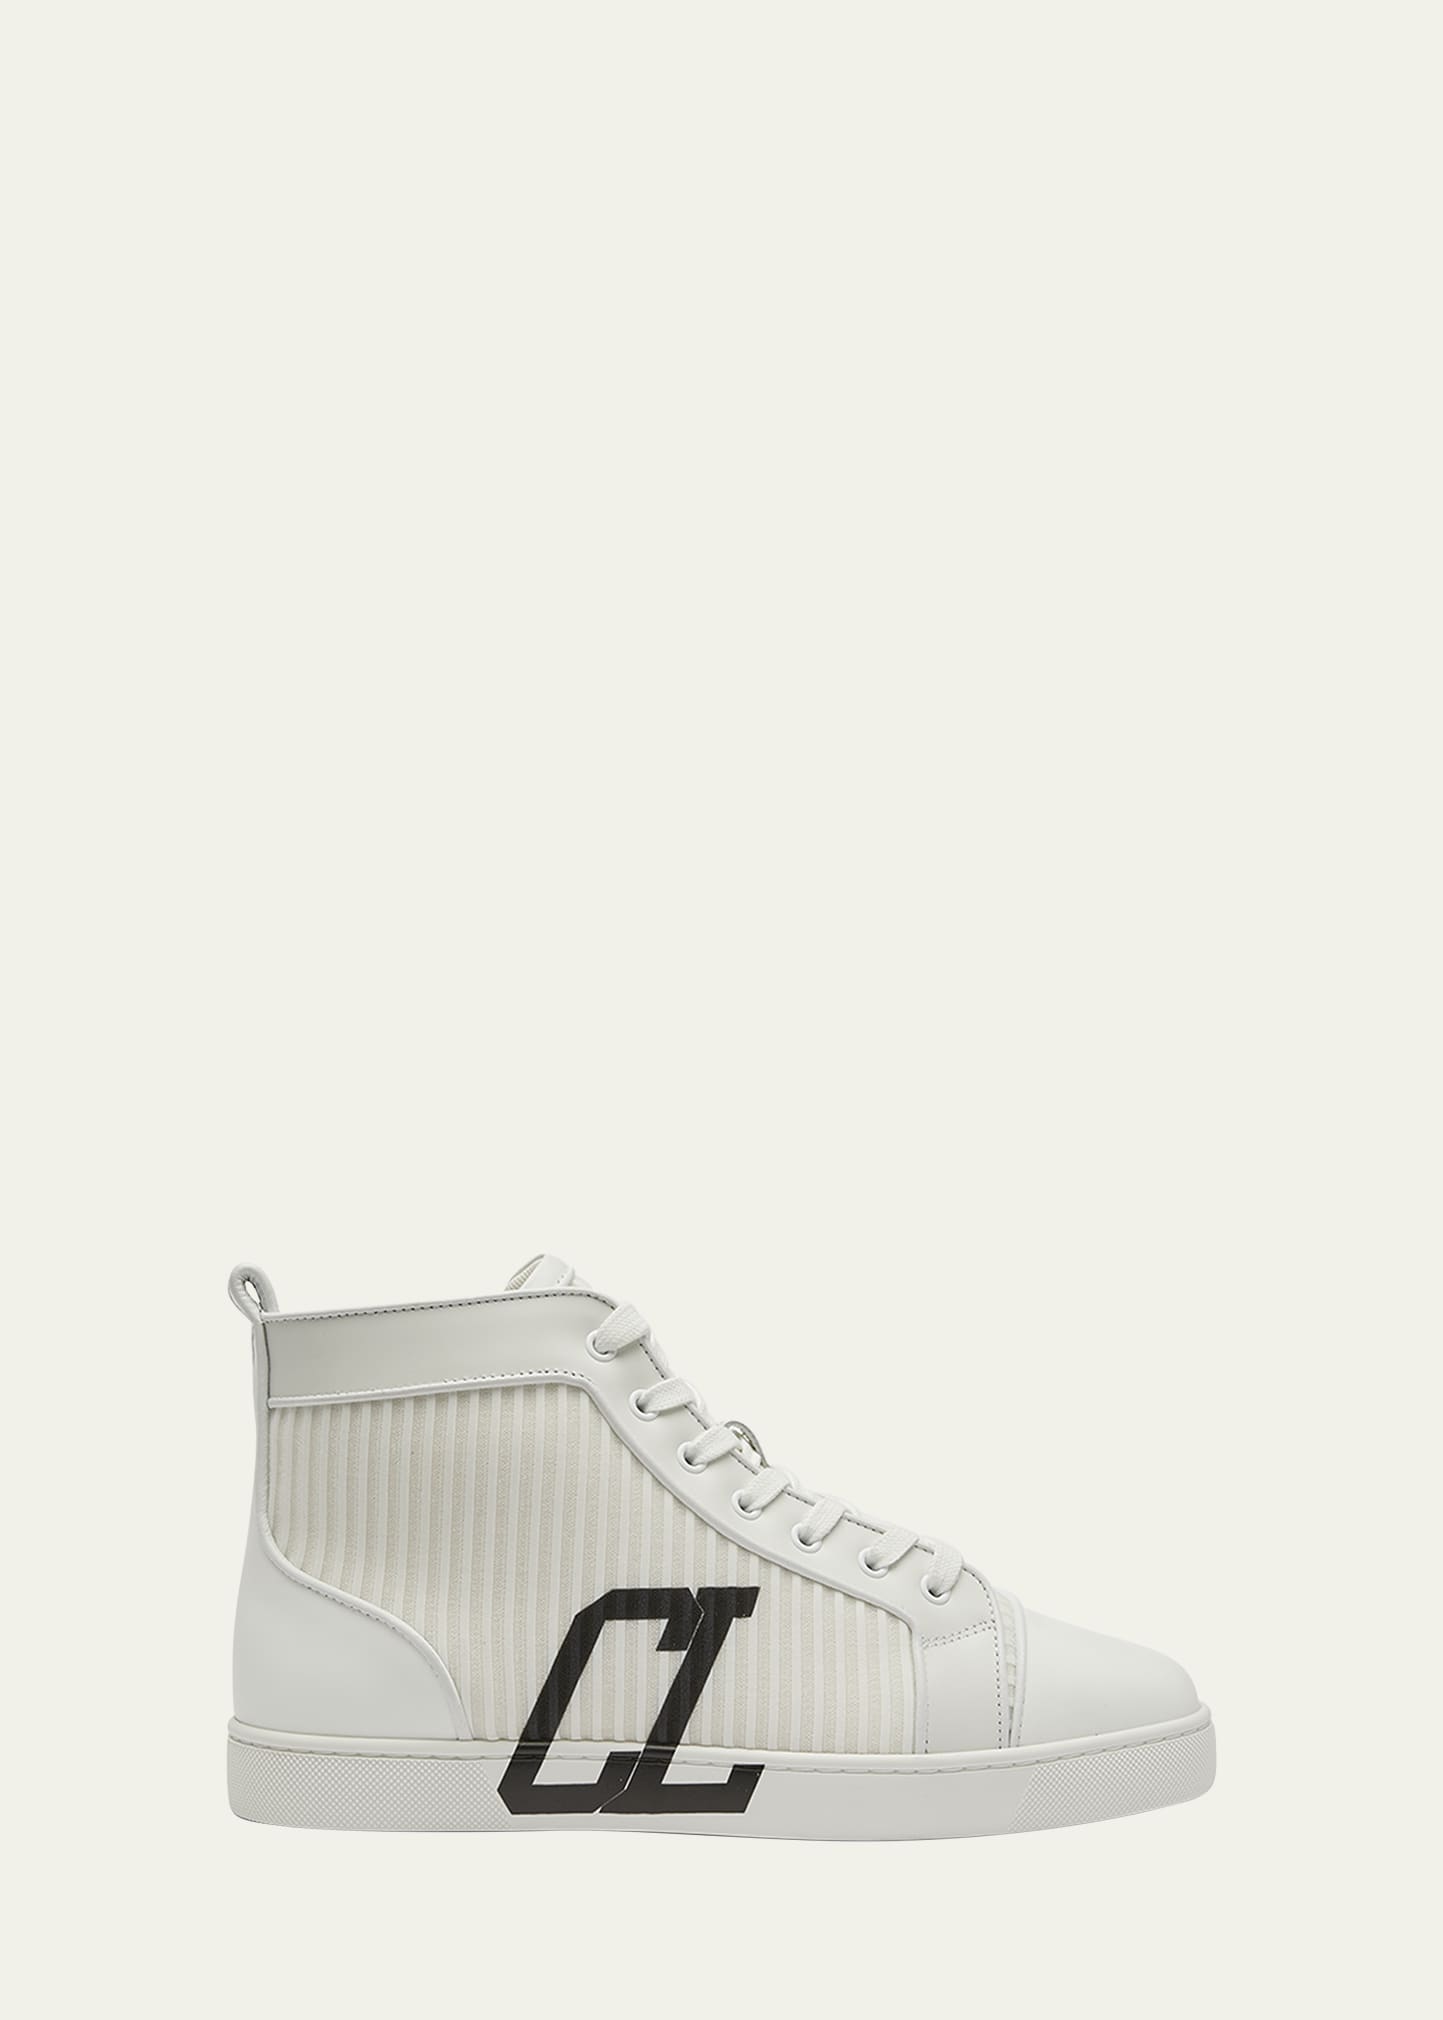 Christian Louboutin Men's Monogram Suede-Trim Sneakers - Bergdorf